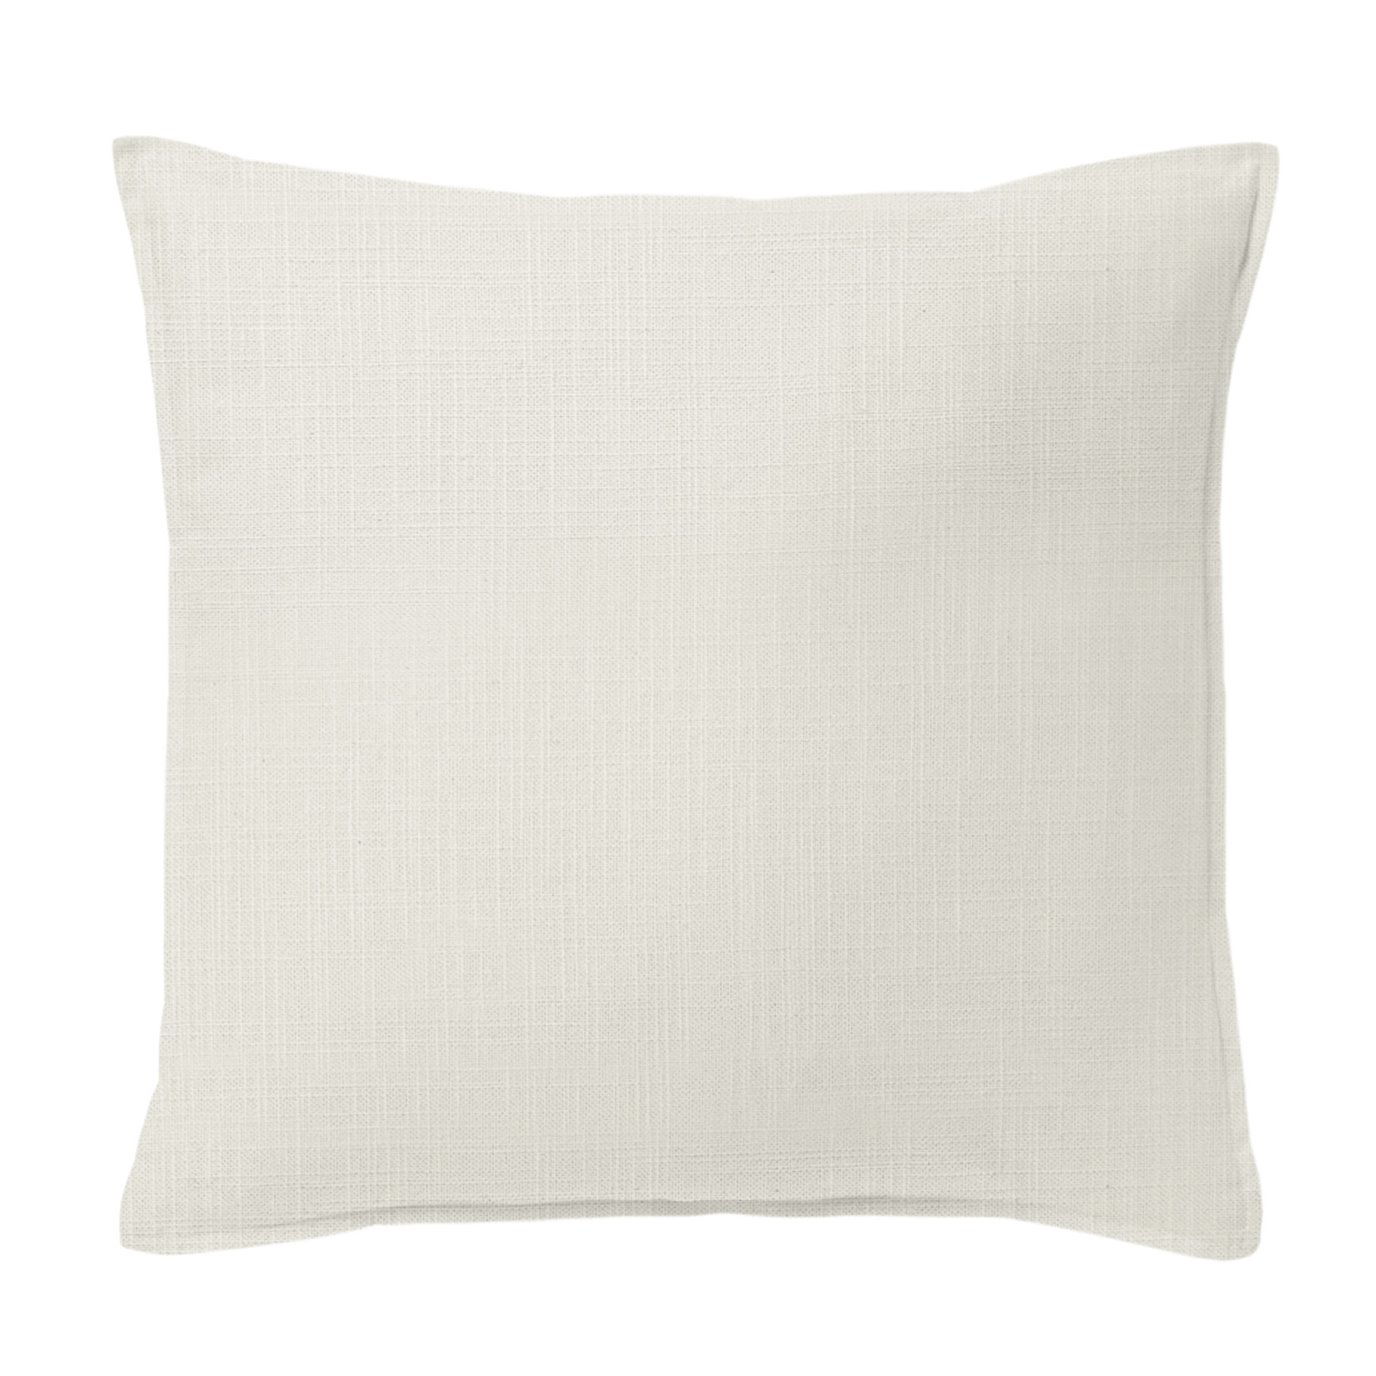 Ancebridge Vanilla Decorative Pillow - Size 24" Square